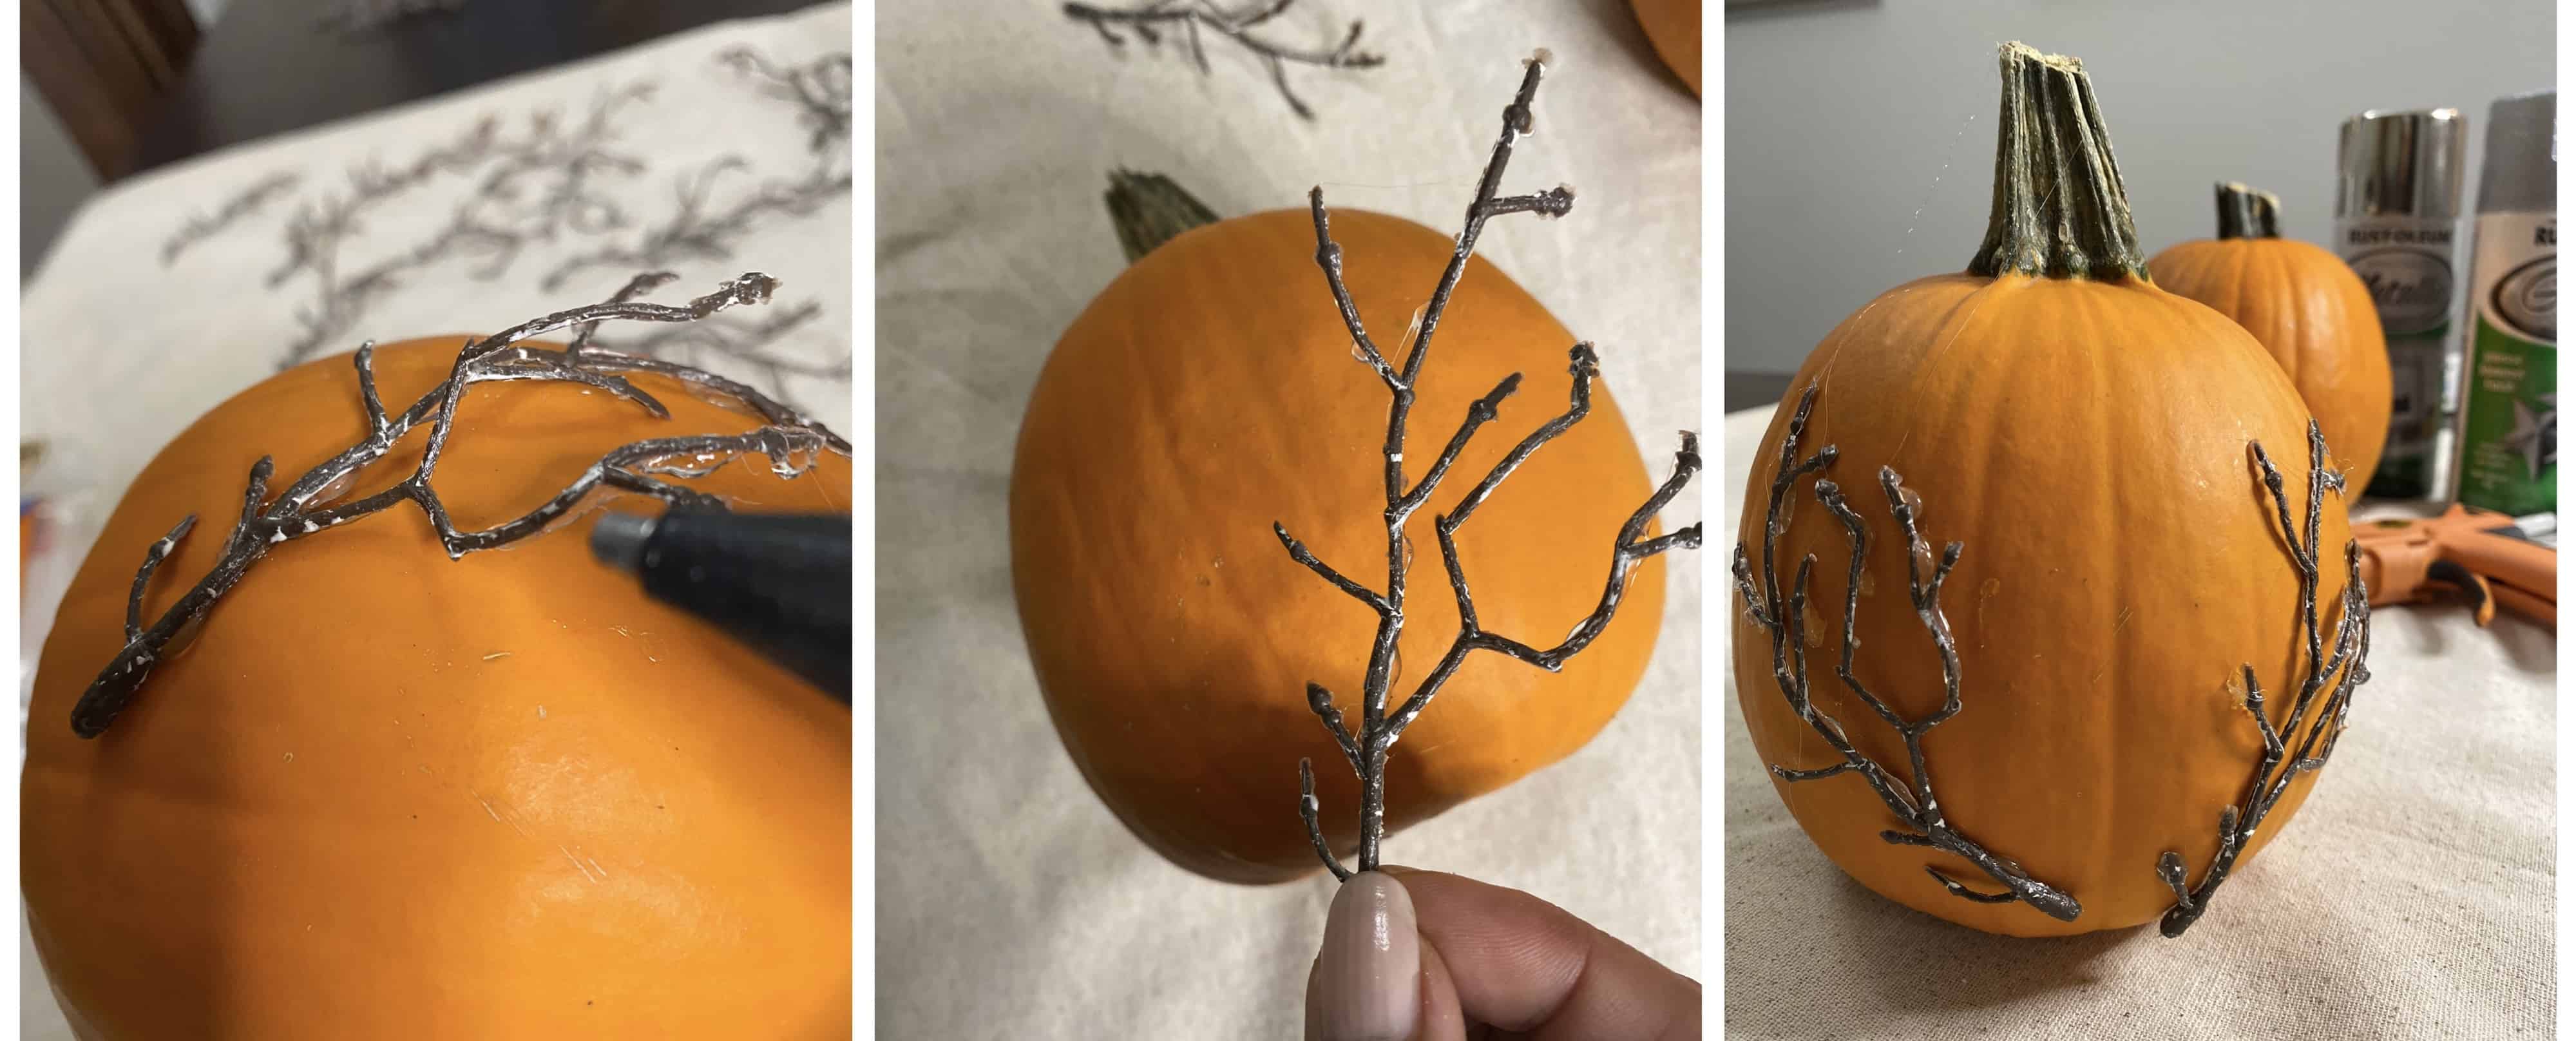 Glue the pumpkin